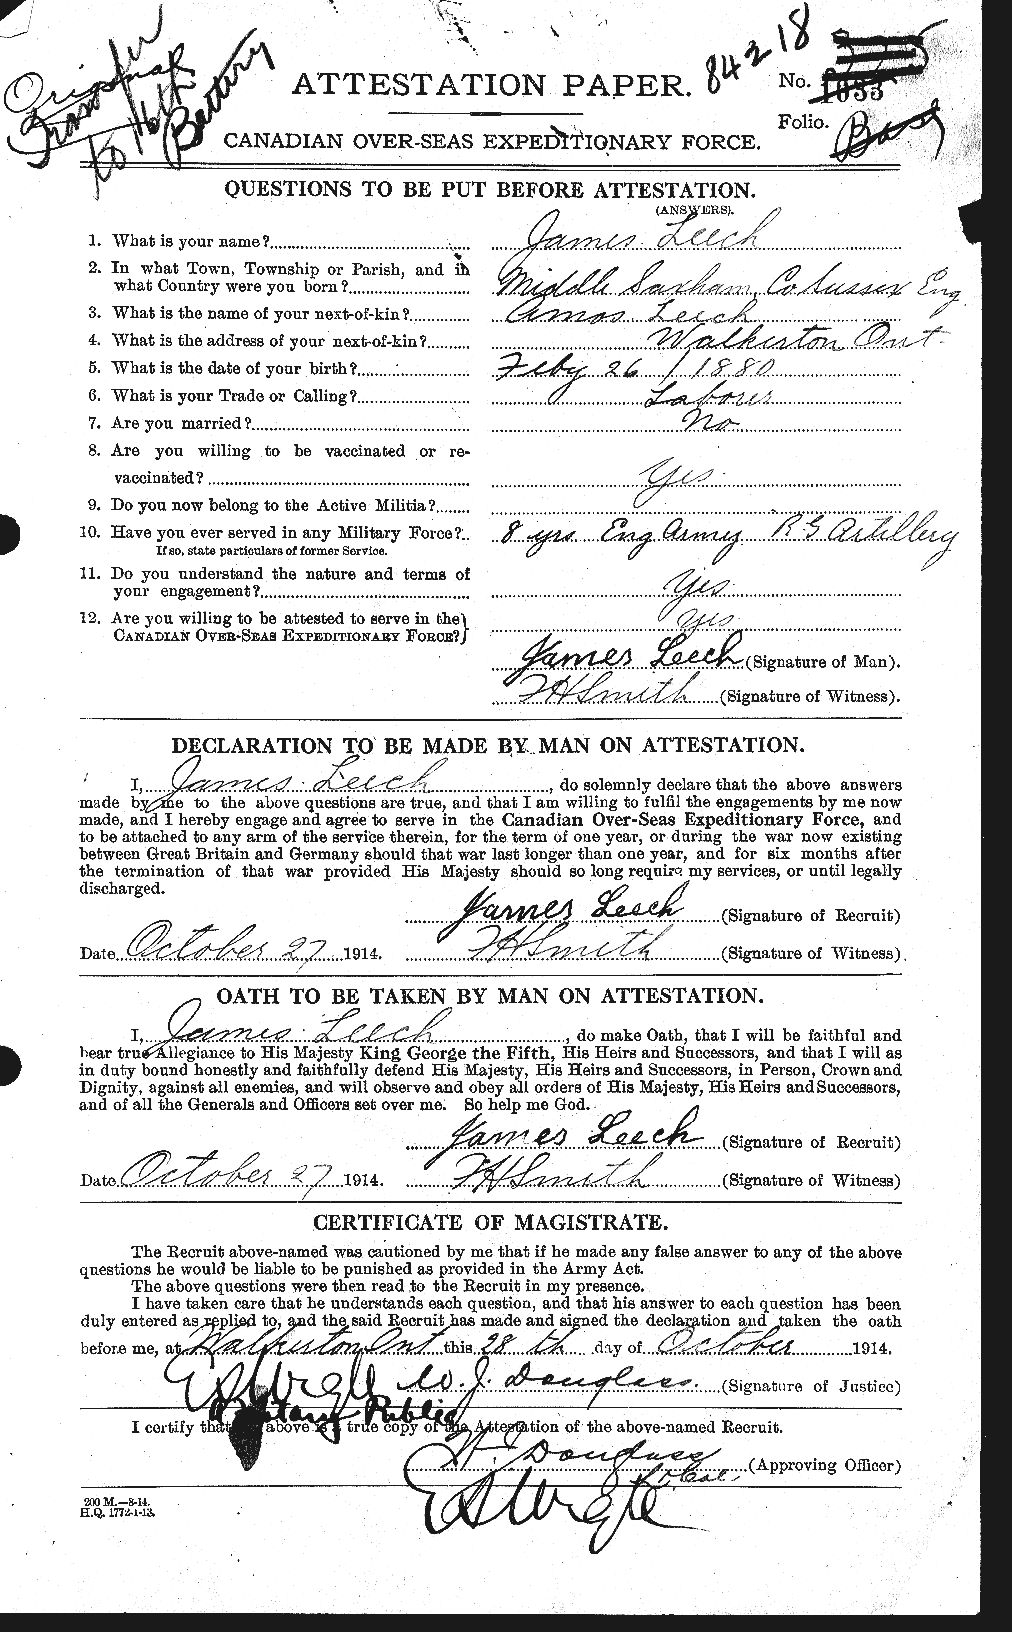 Dossiers du Personnel de la Première Guerre mondiale - CEC 459191a